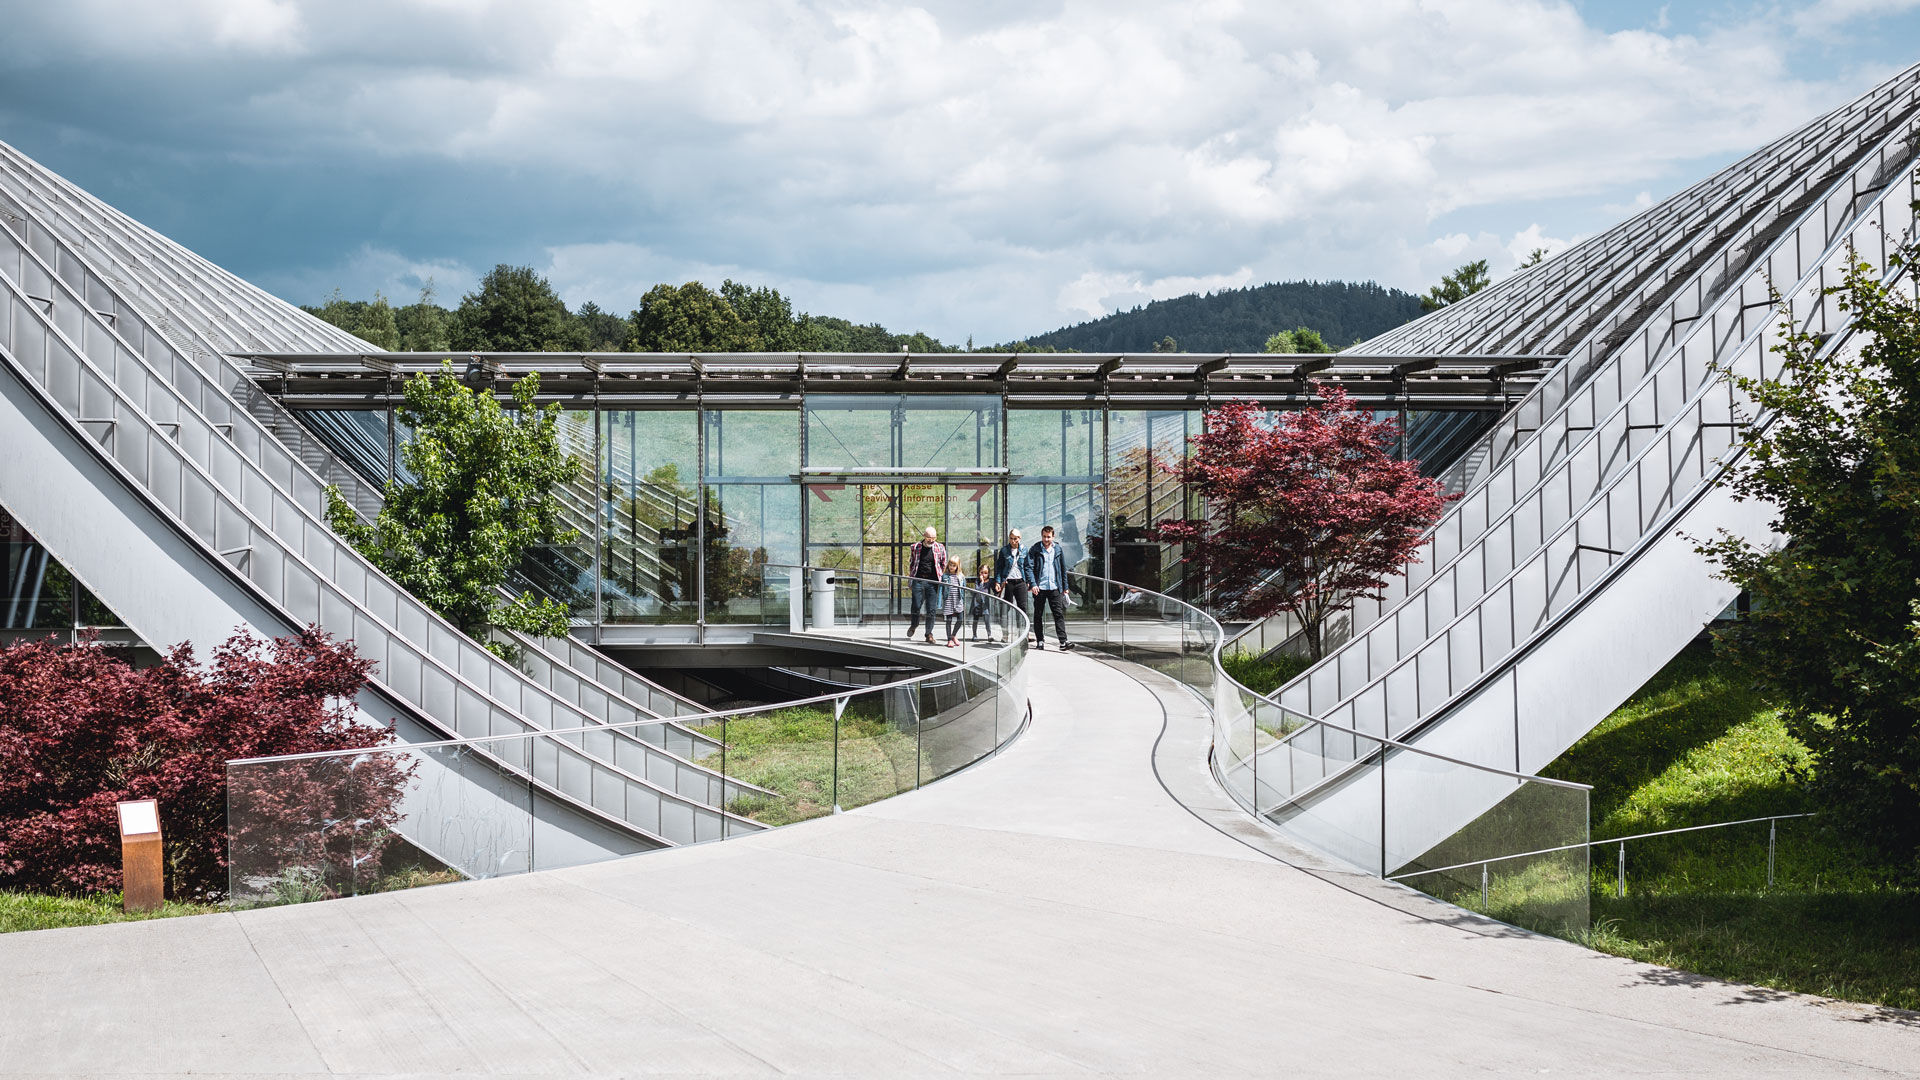 Zentrum Paul Klee, Bern